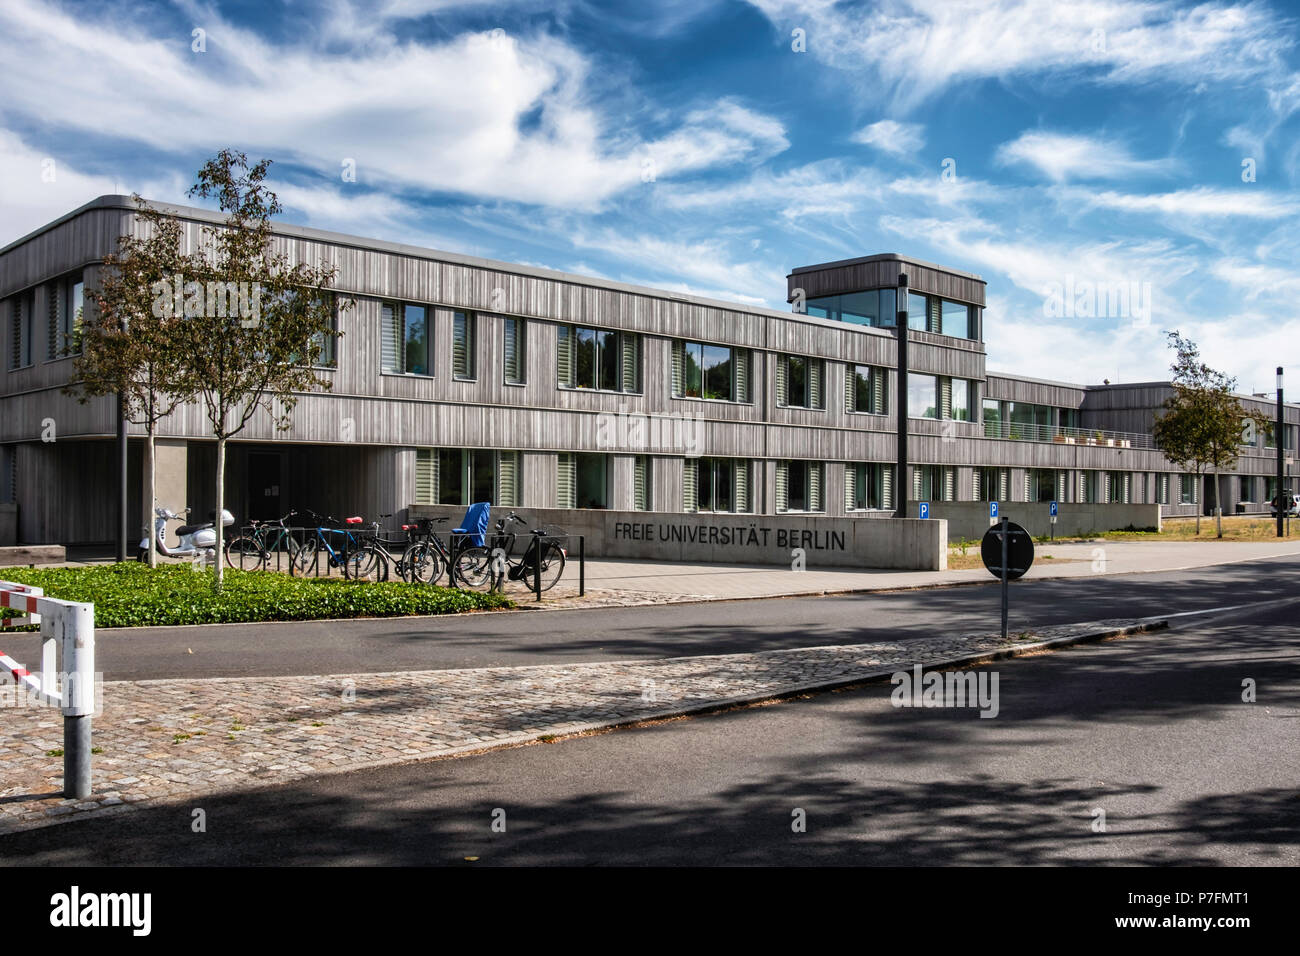 Berlín, FU Freie Universität,Universidad Libre, biblioteca de campus. Edificio moderno con fachada exterior y el revestimiento de madera Foto de stock